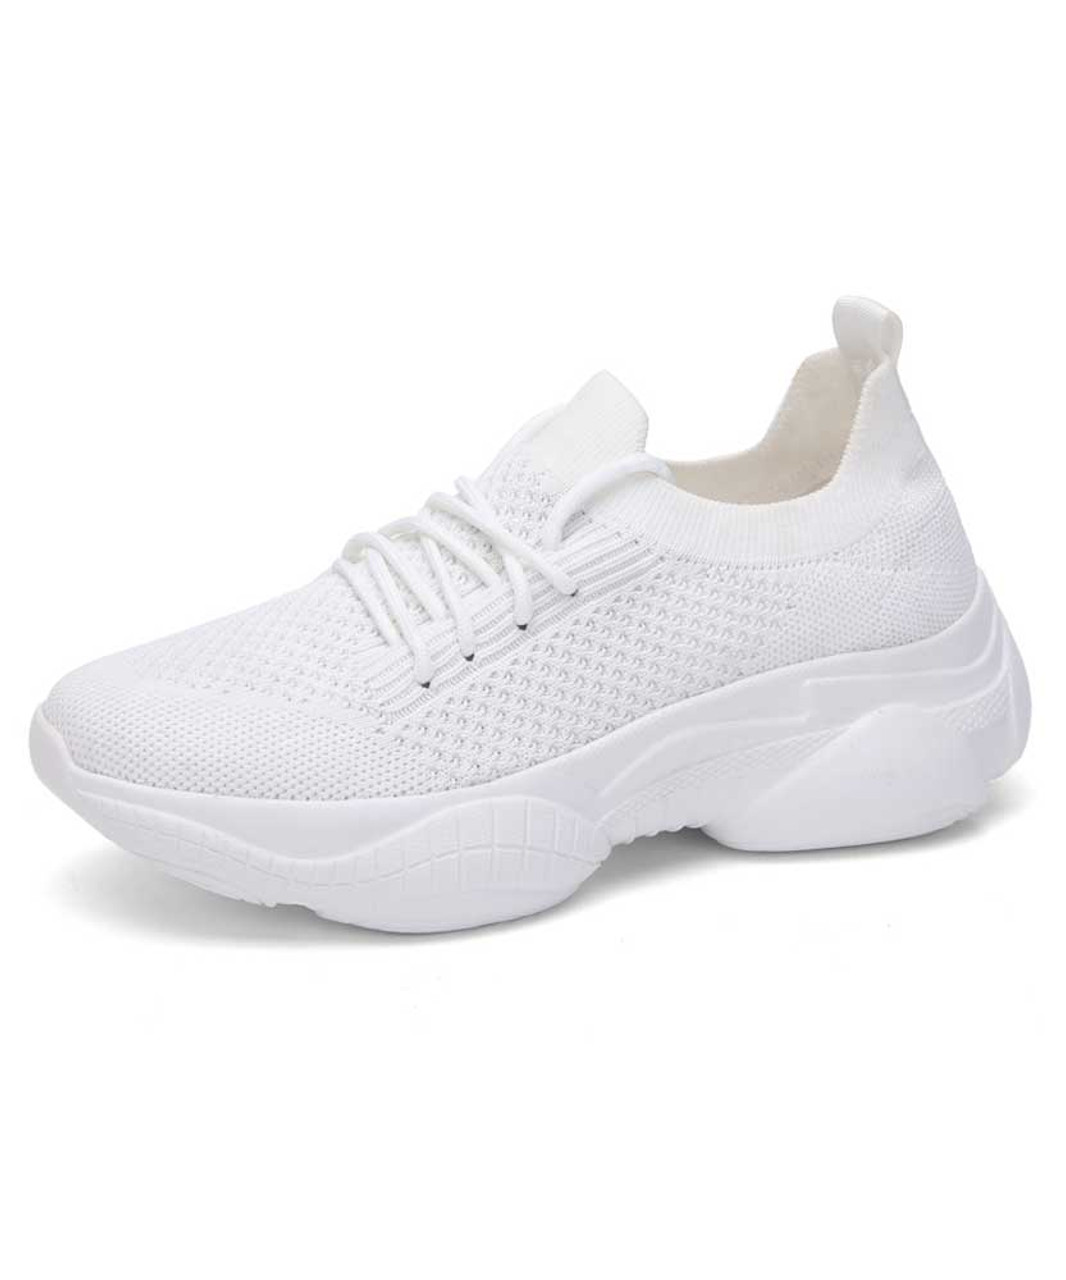 womens white mesh tennis shoes